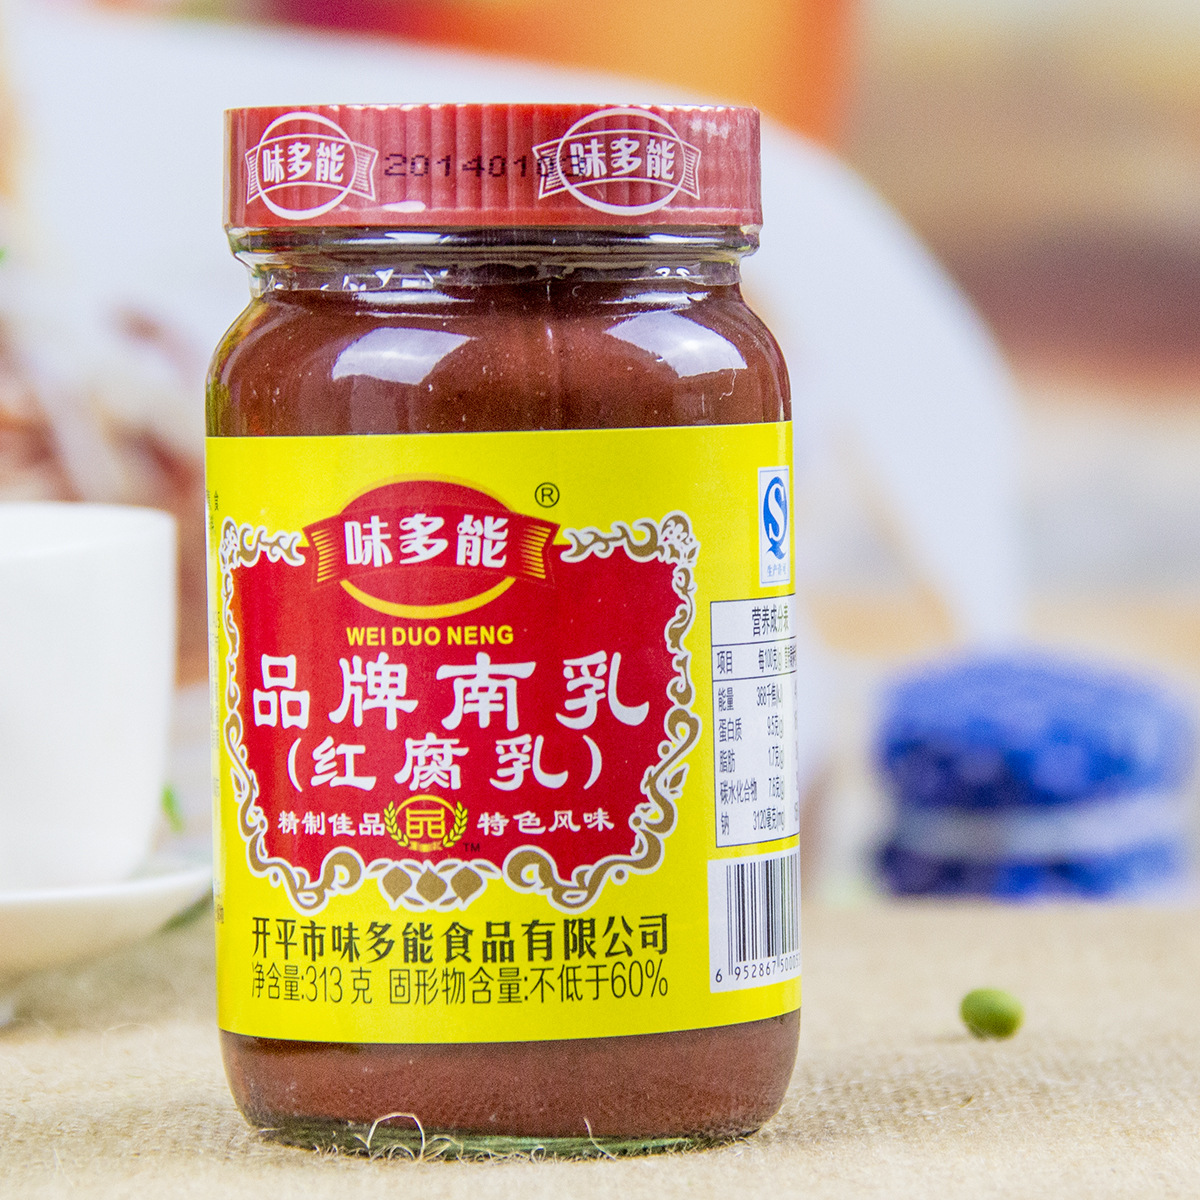 桂林腐乳-名特食品图谱-图片